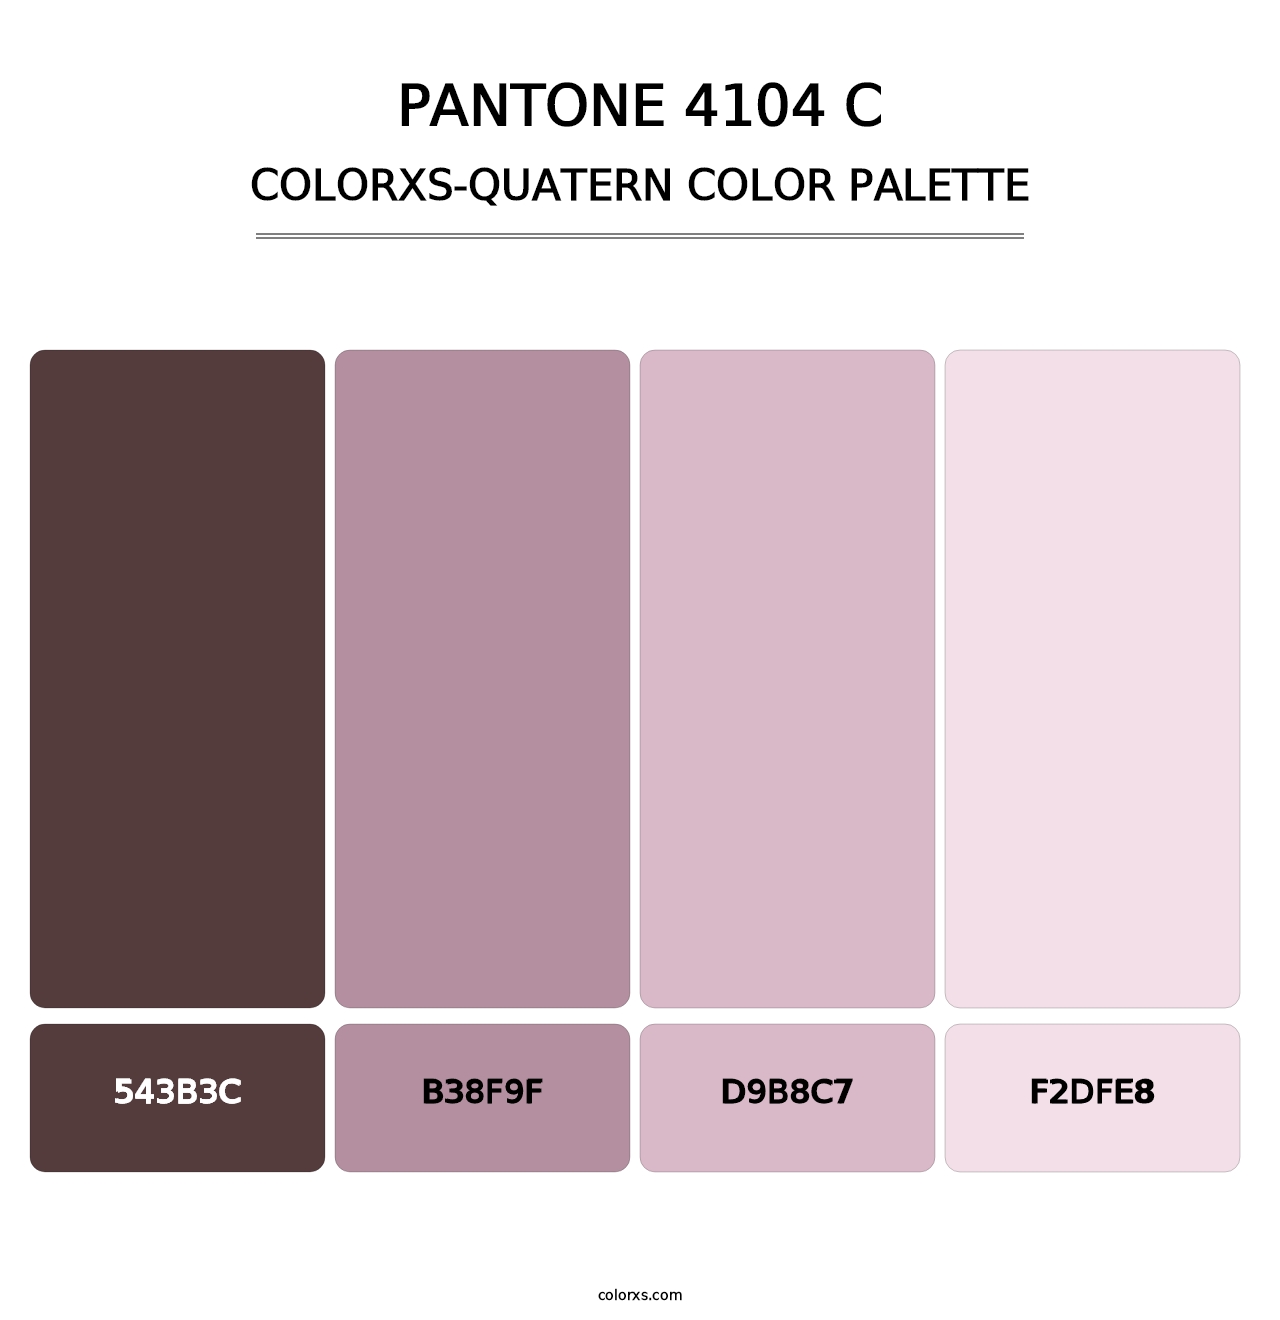 PANTONE 4104 C - Colorxs Quatern Palette